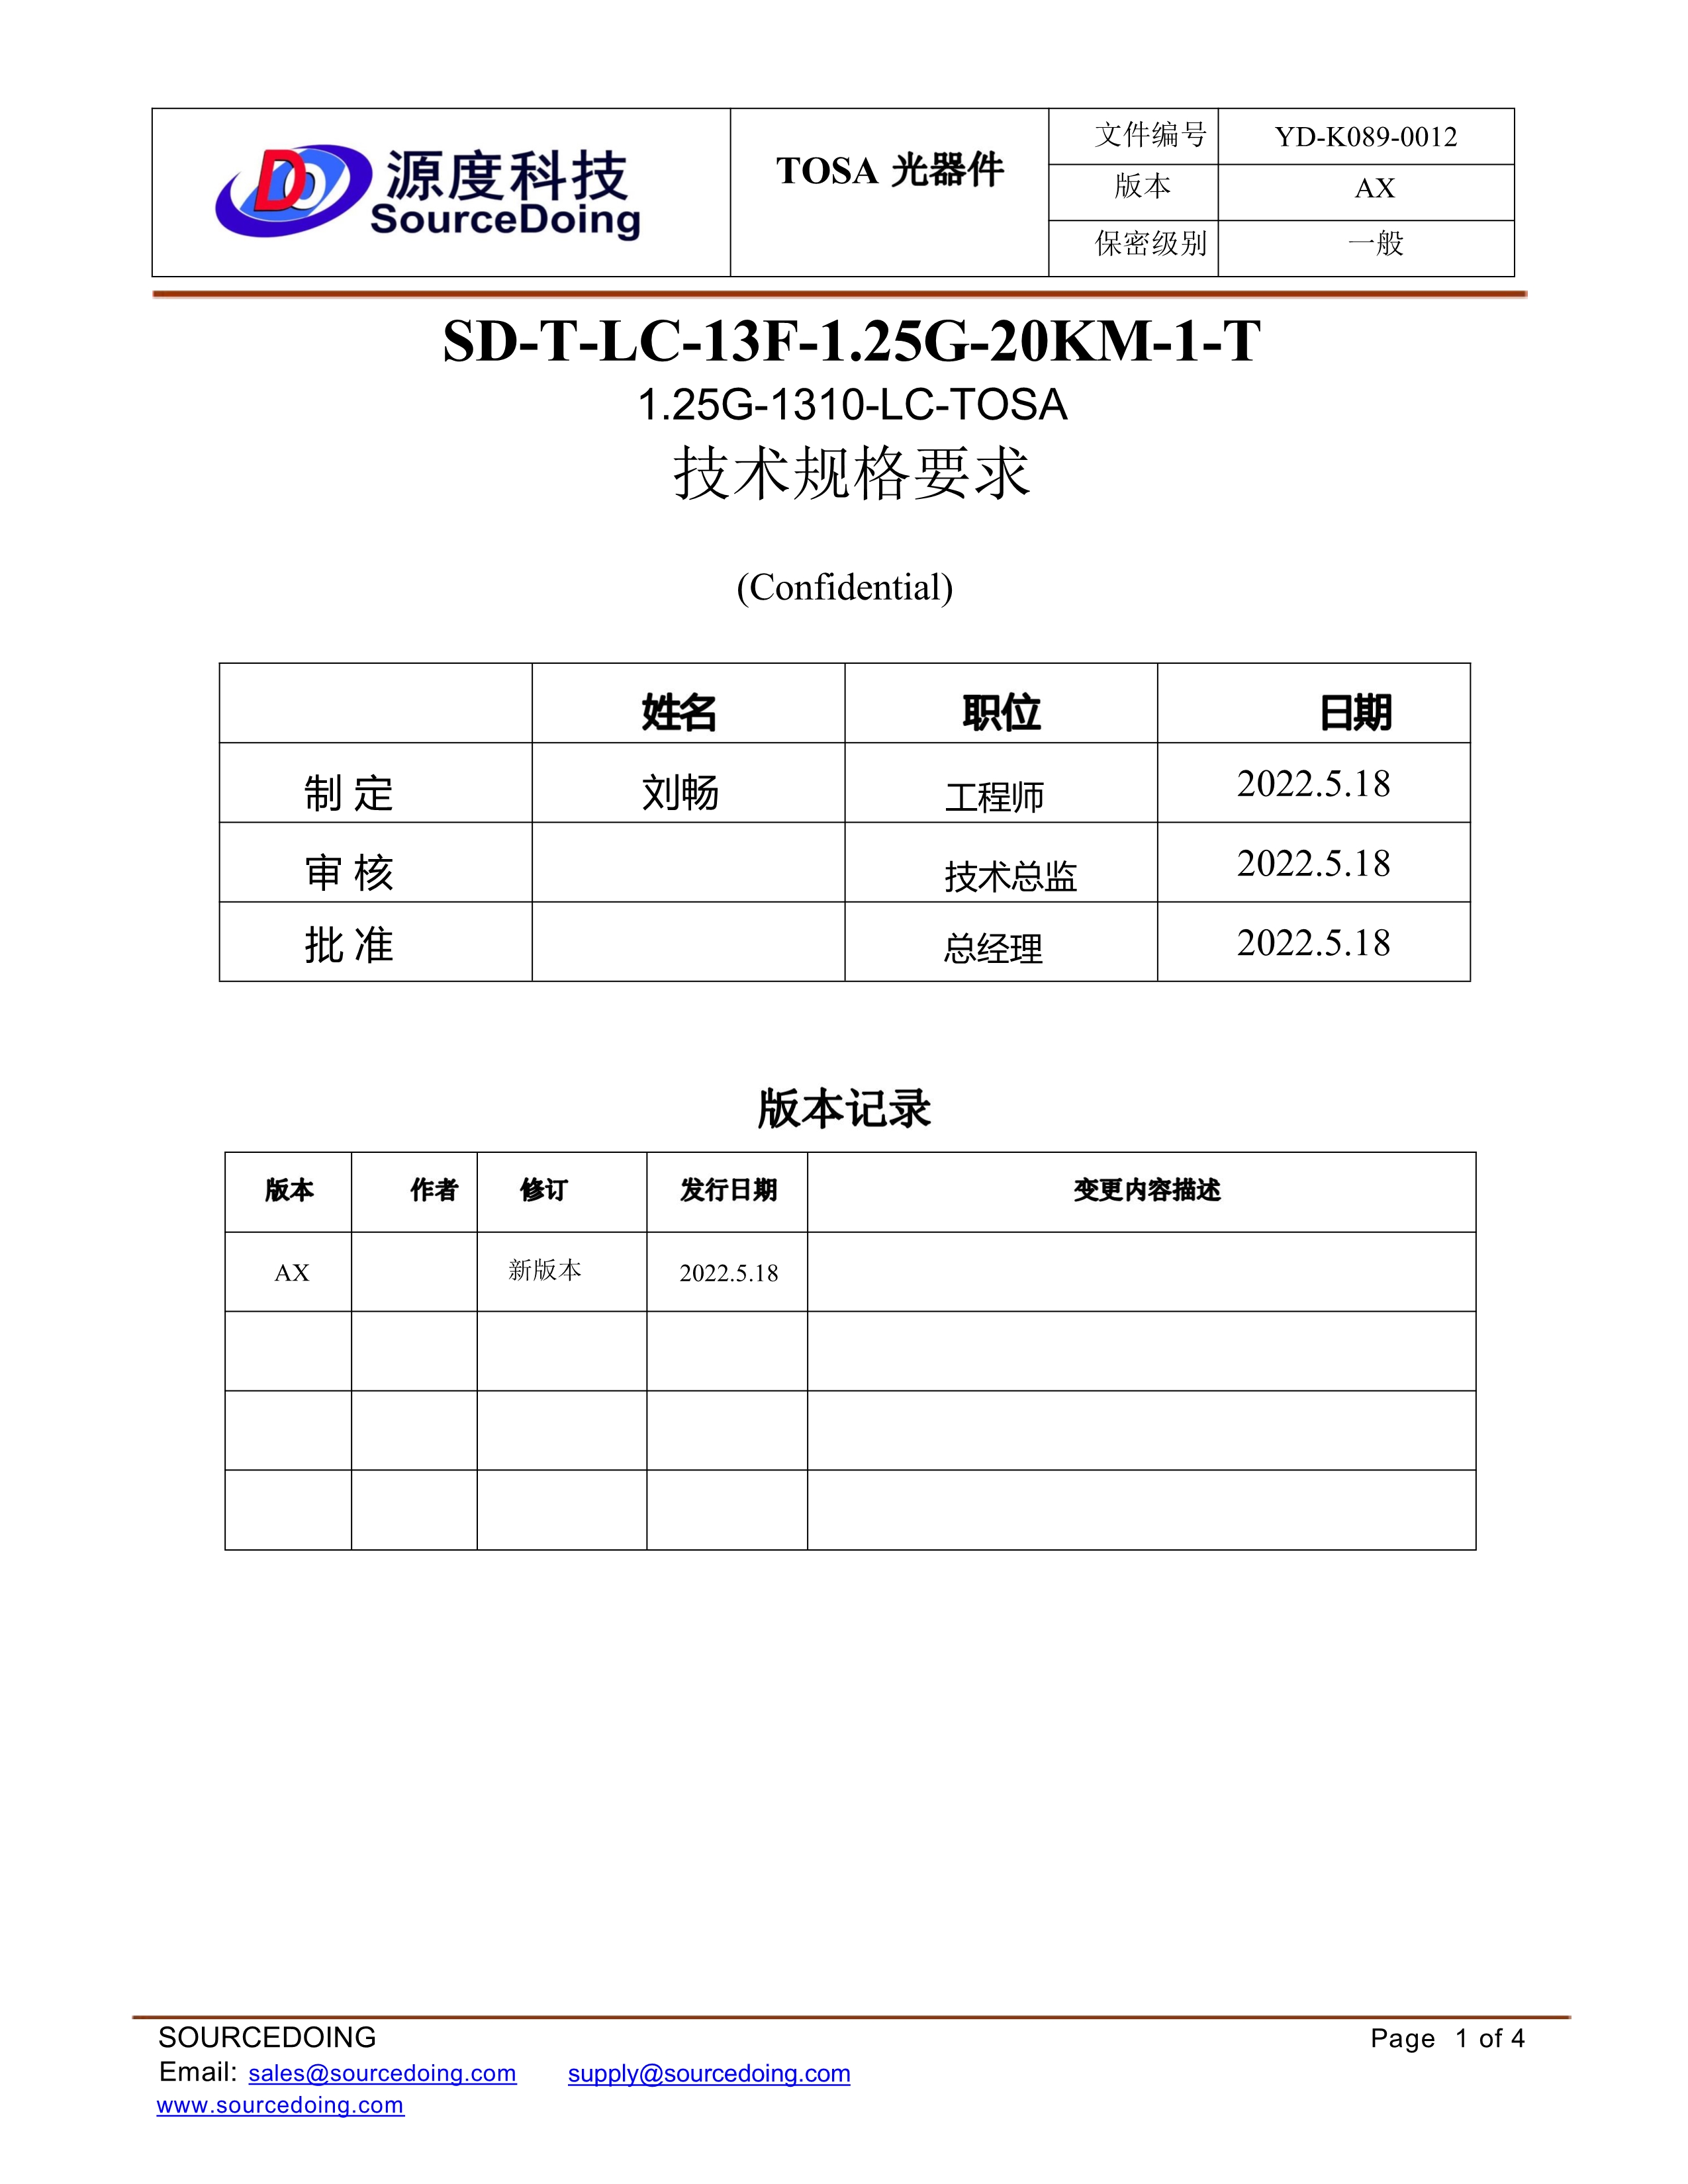 (YD-K089-0012) SD-T-LC-13F-1.25G-20KM-1-T_1.jpg